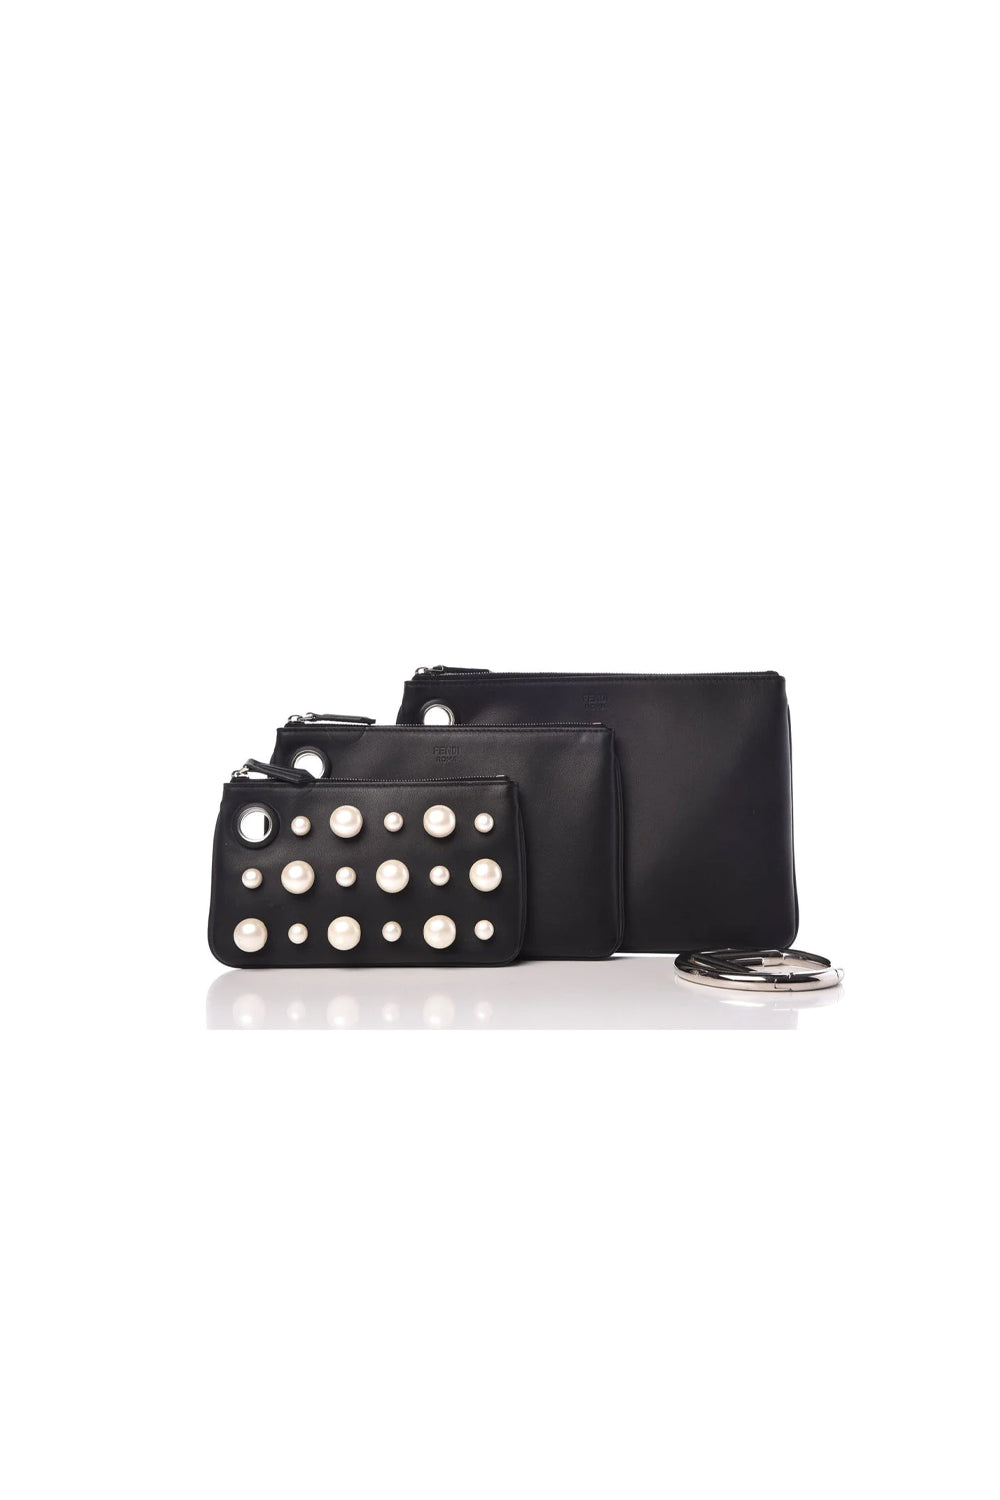 Fendi Pearl Studded Triplette Leather Handbag